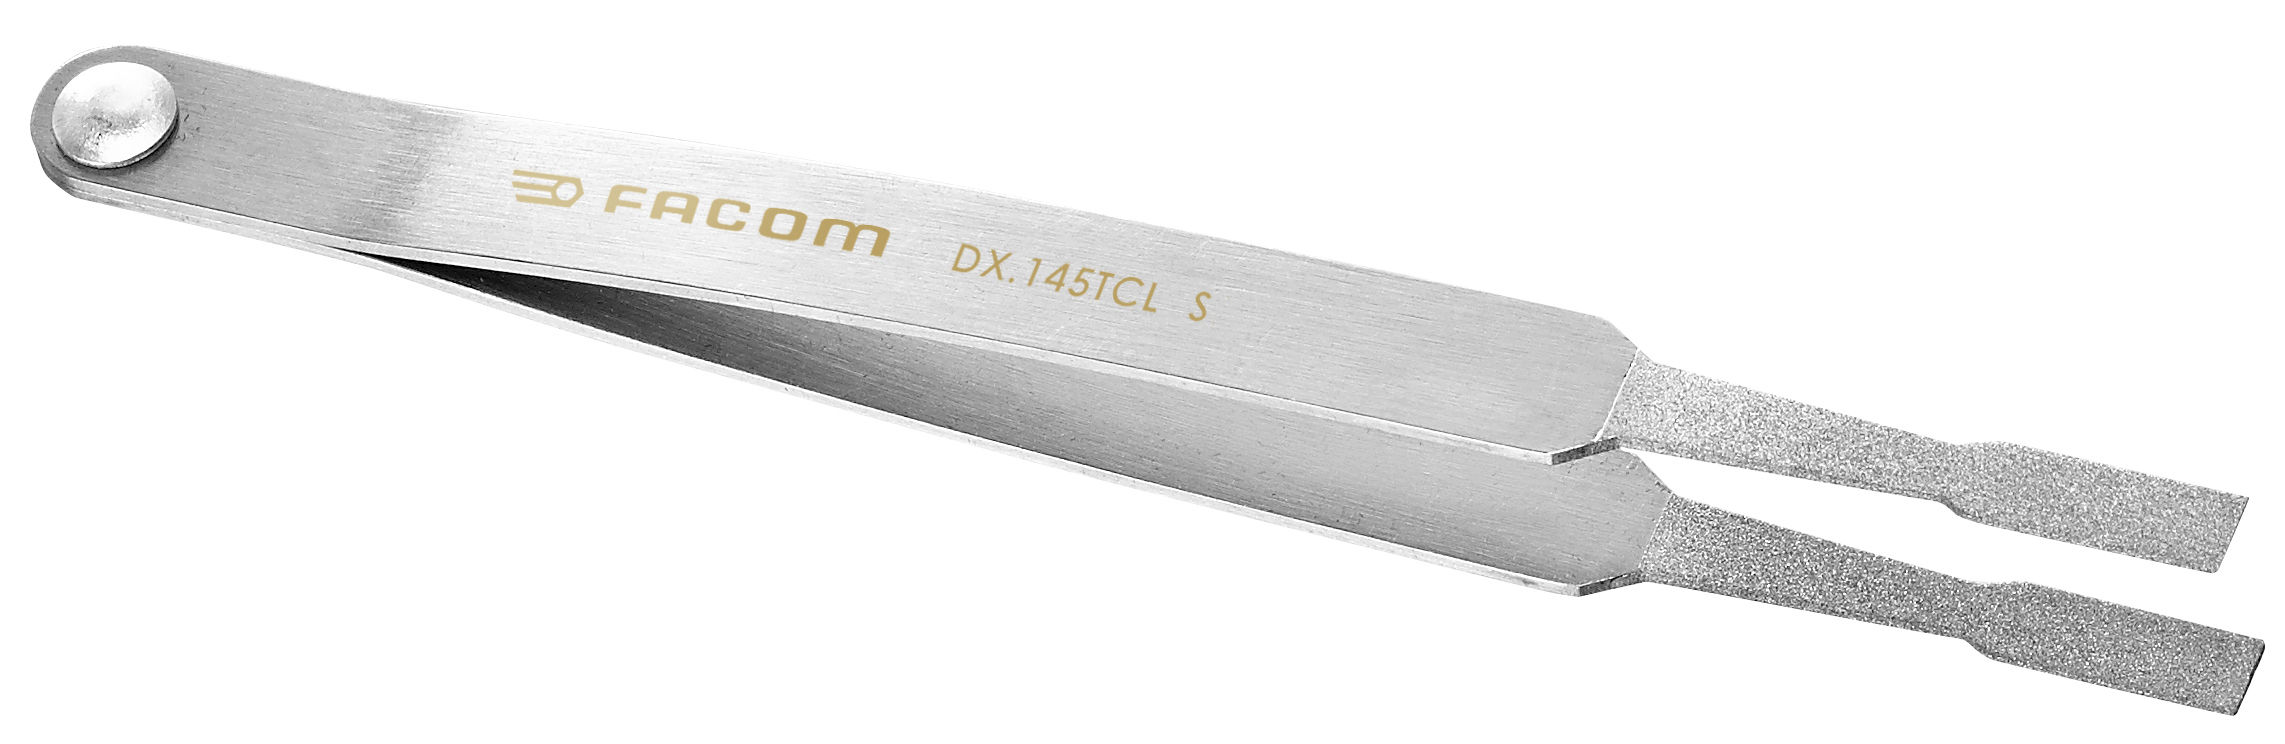 1.DX.145TCL Diamantpincet voor het reinigen van contacten large